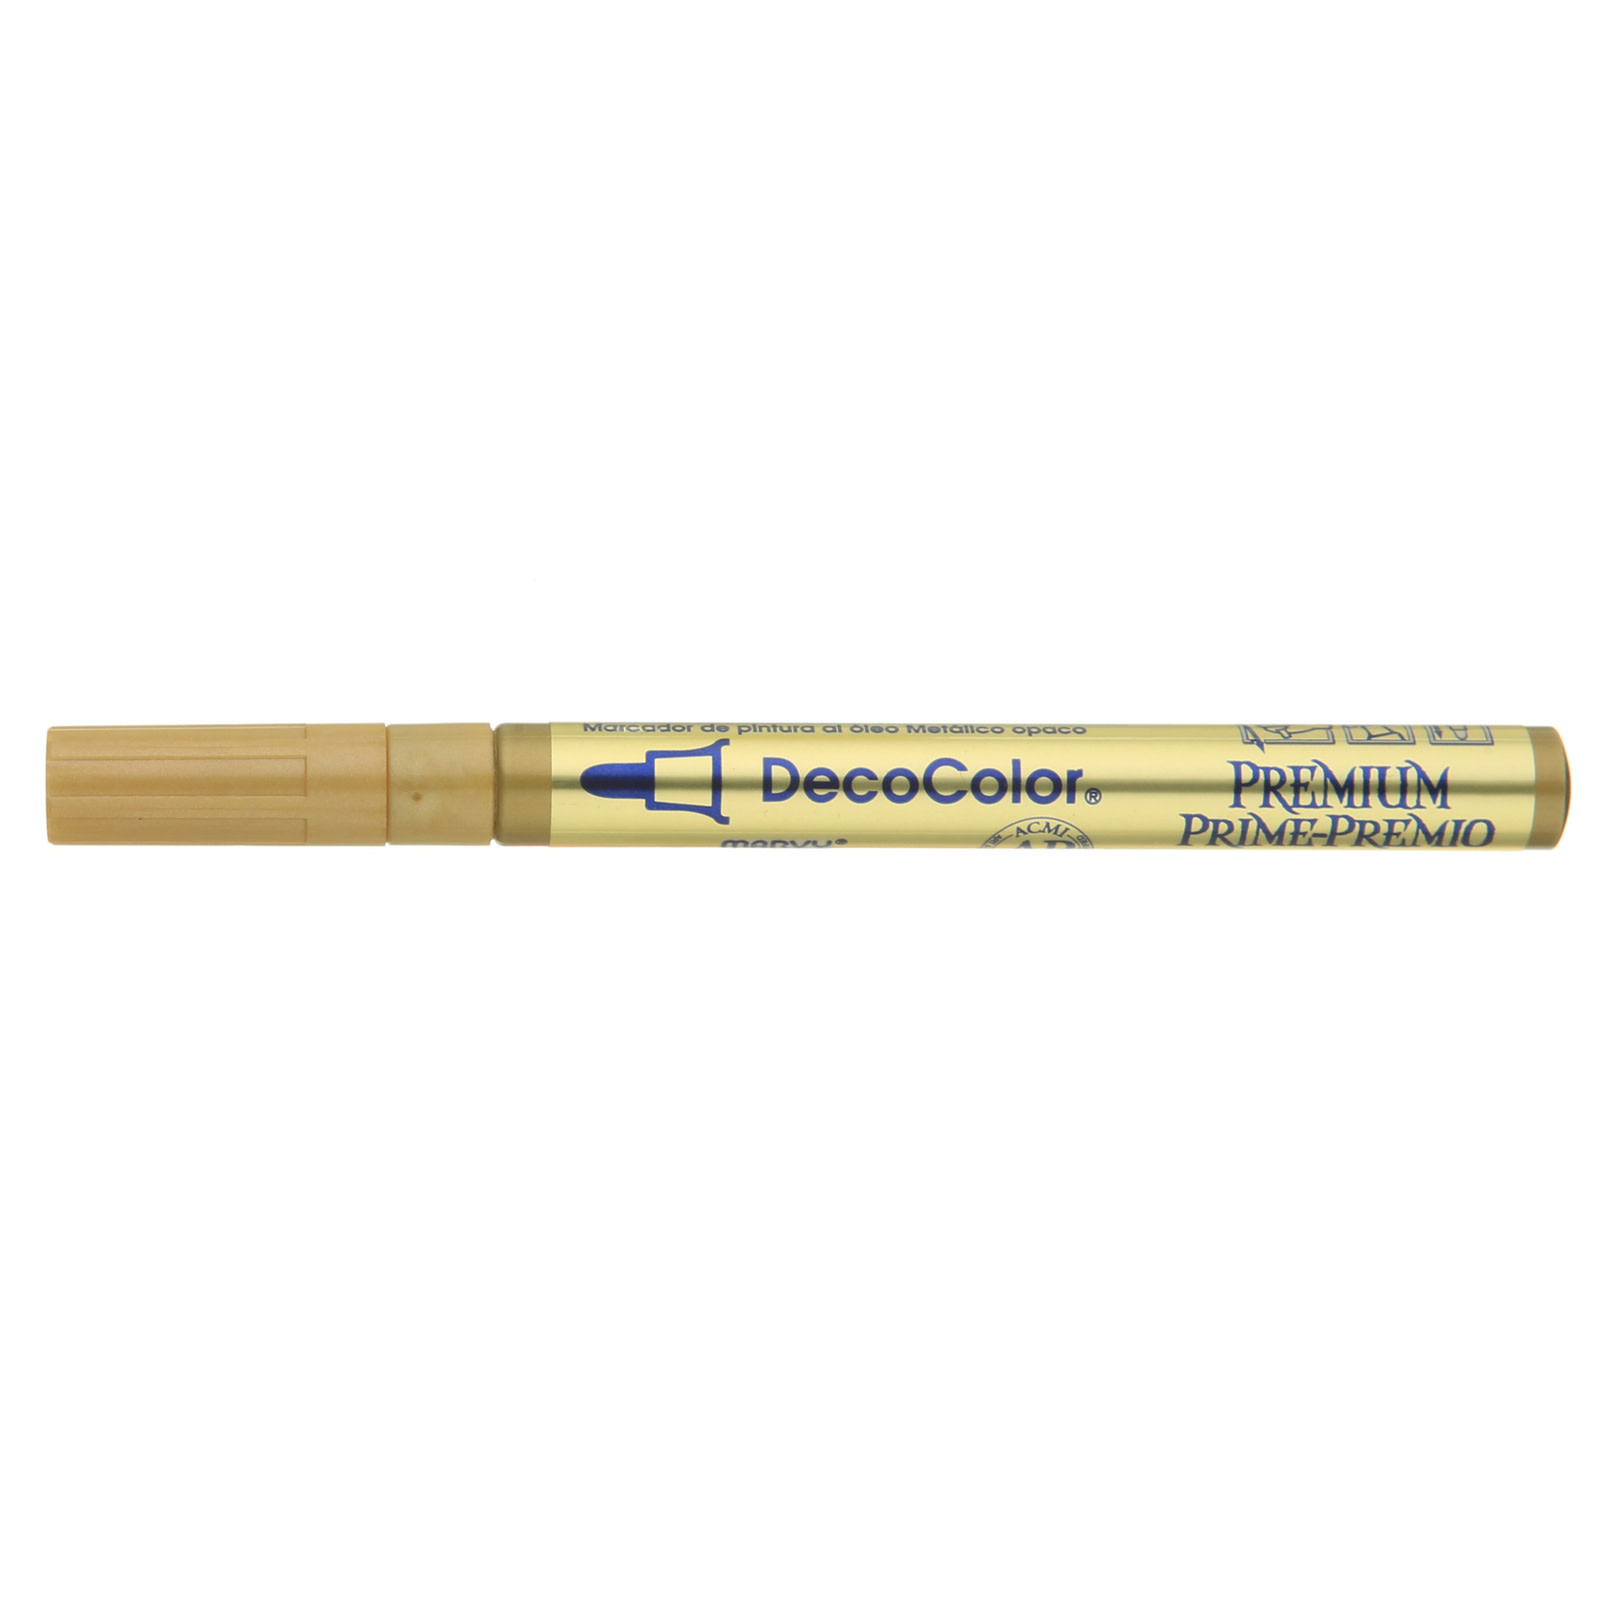 Uchida DecoColor Premium Paint Markers, 3mm Fine Tip, Gold